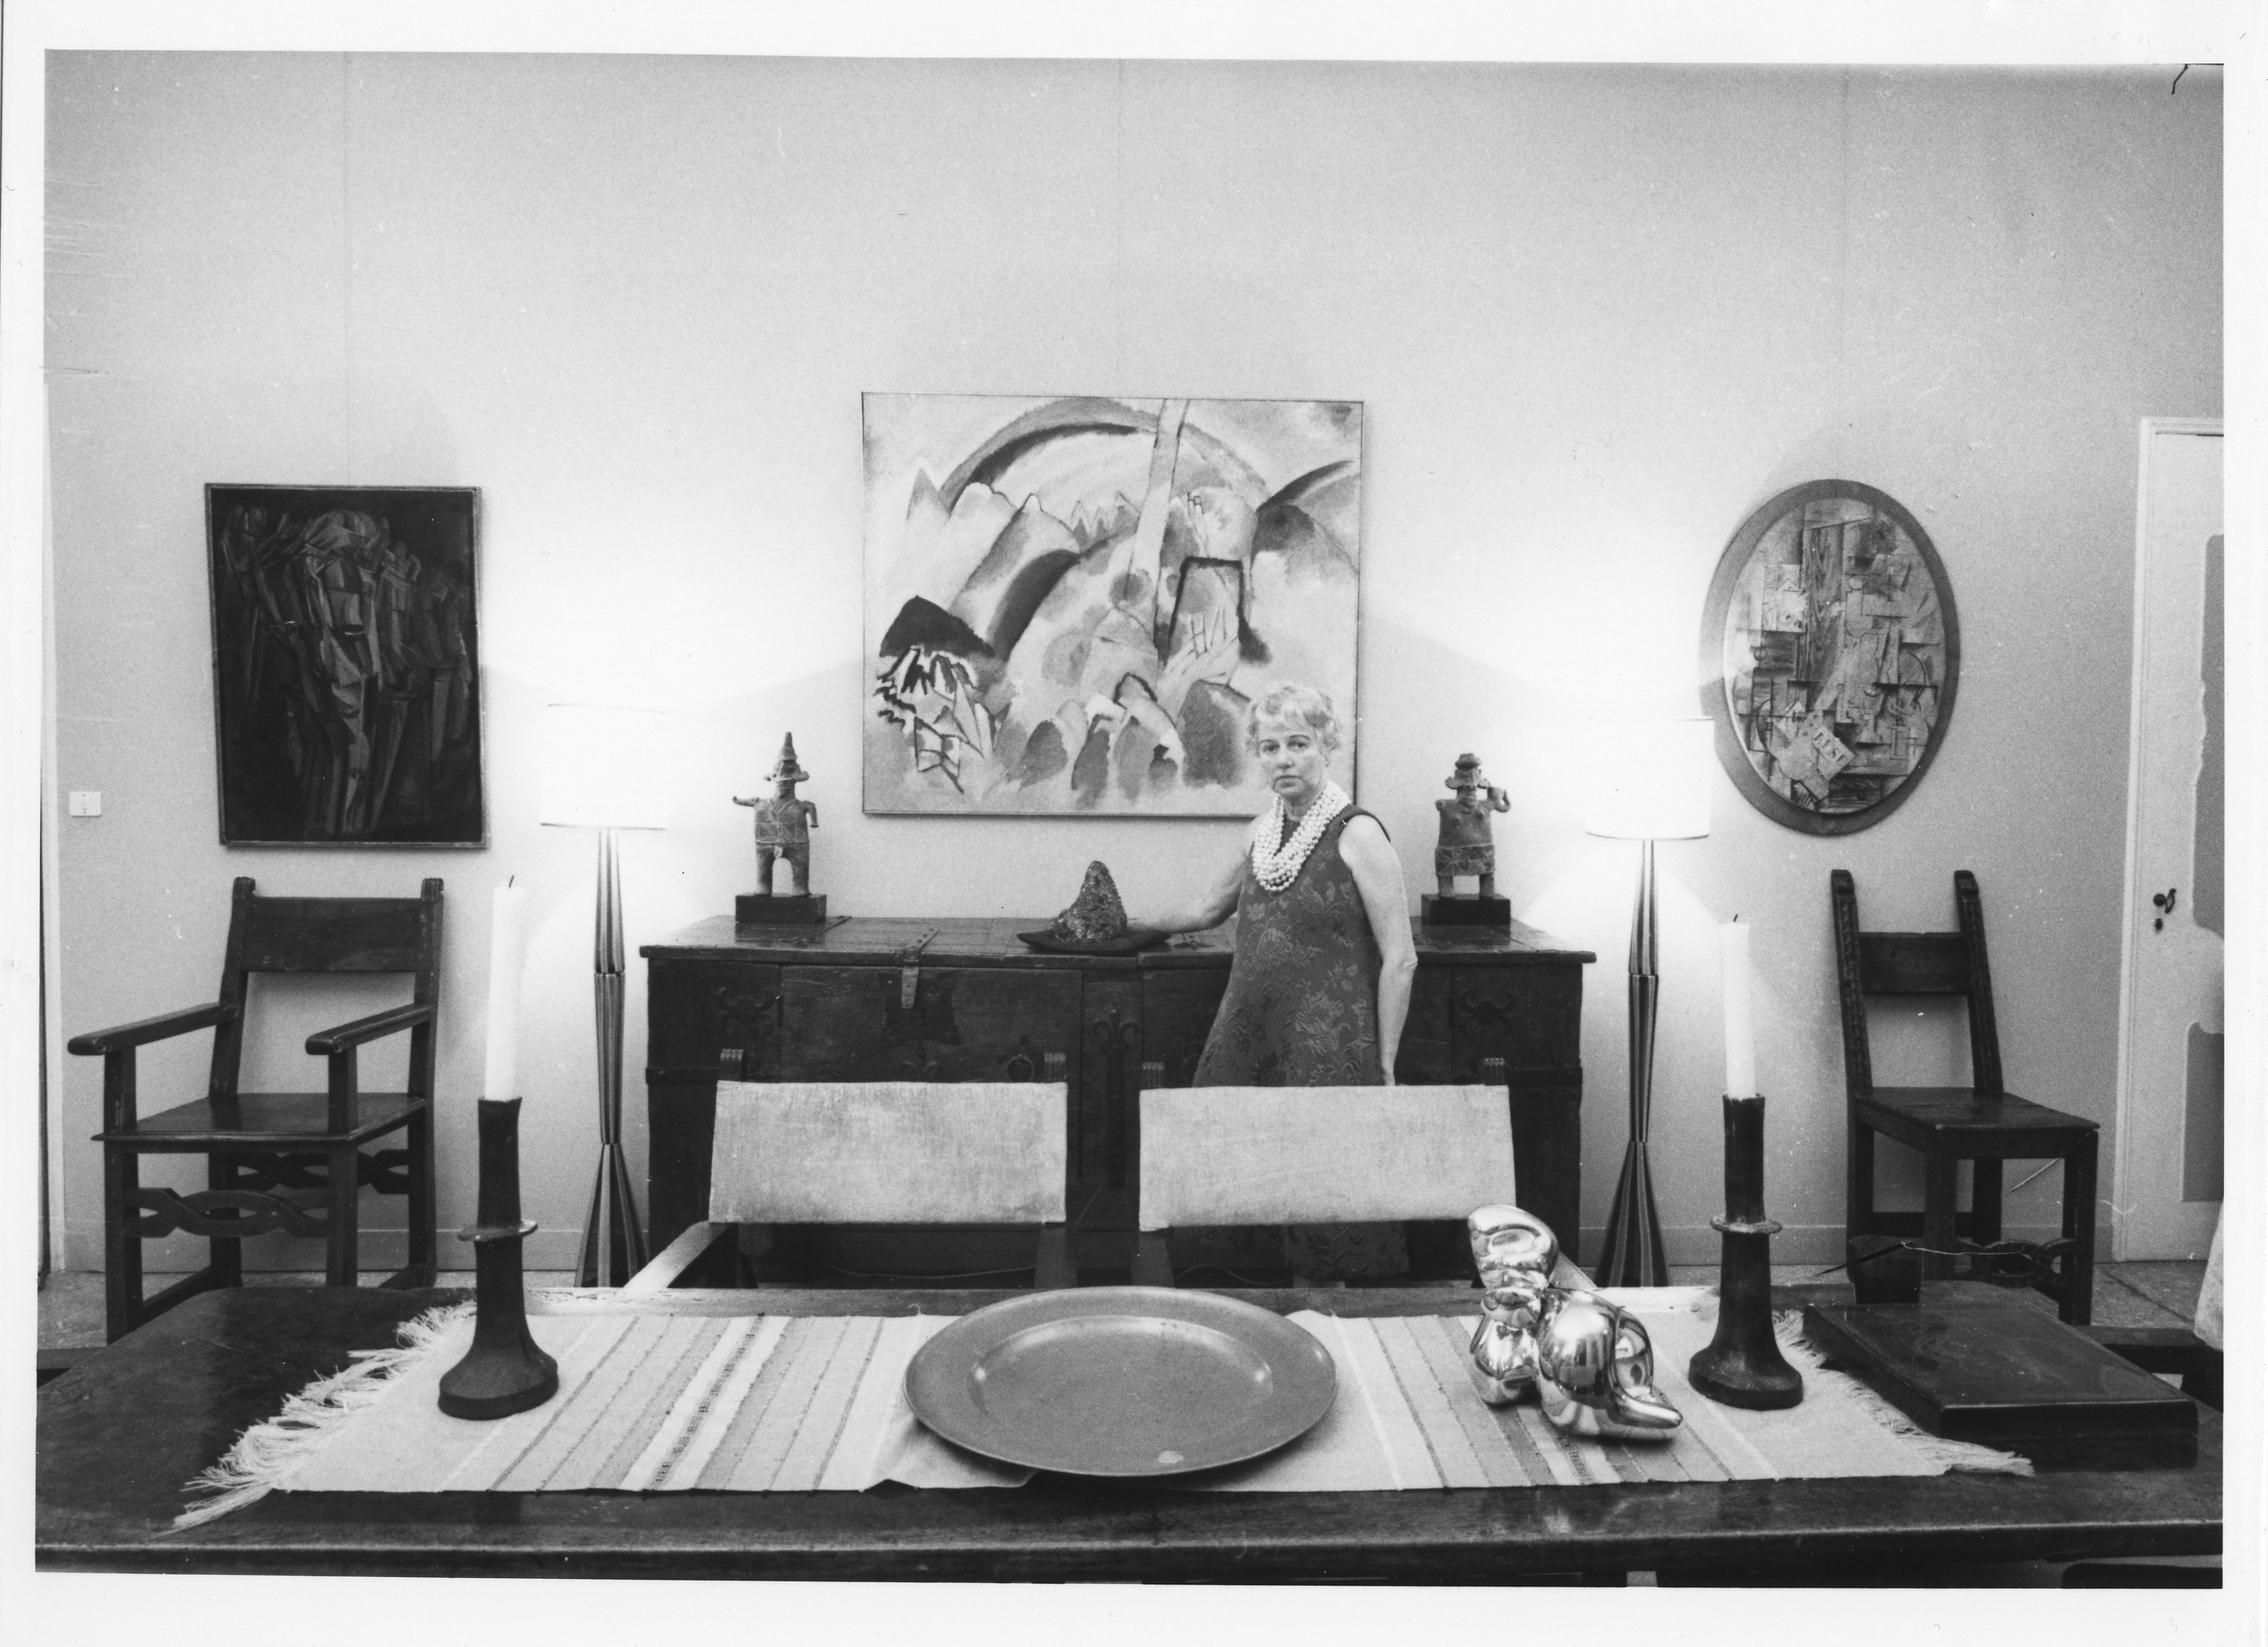 Peggy Guggenheim na sala de jantar do Palazzo Venier dei Leoni, sua residência veneziana, que hoje abriga a fundação com seu nome (Foto: Archivio Cameraphoto Epoche, Cortesia Peggy Guggenheim)